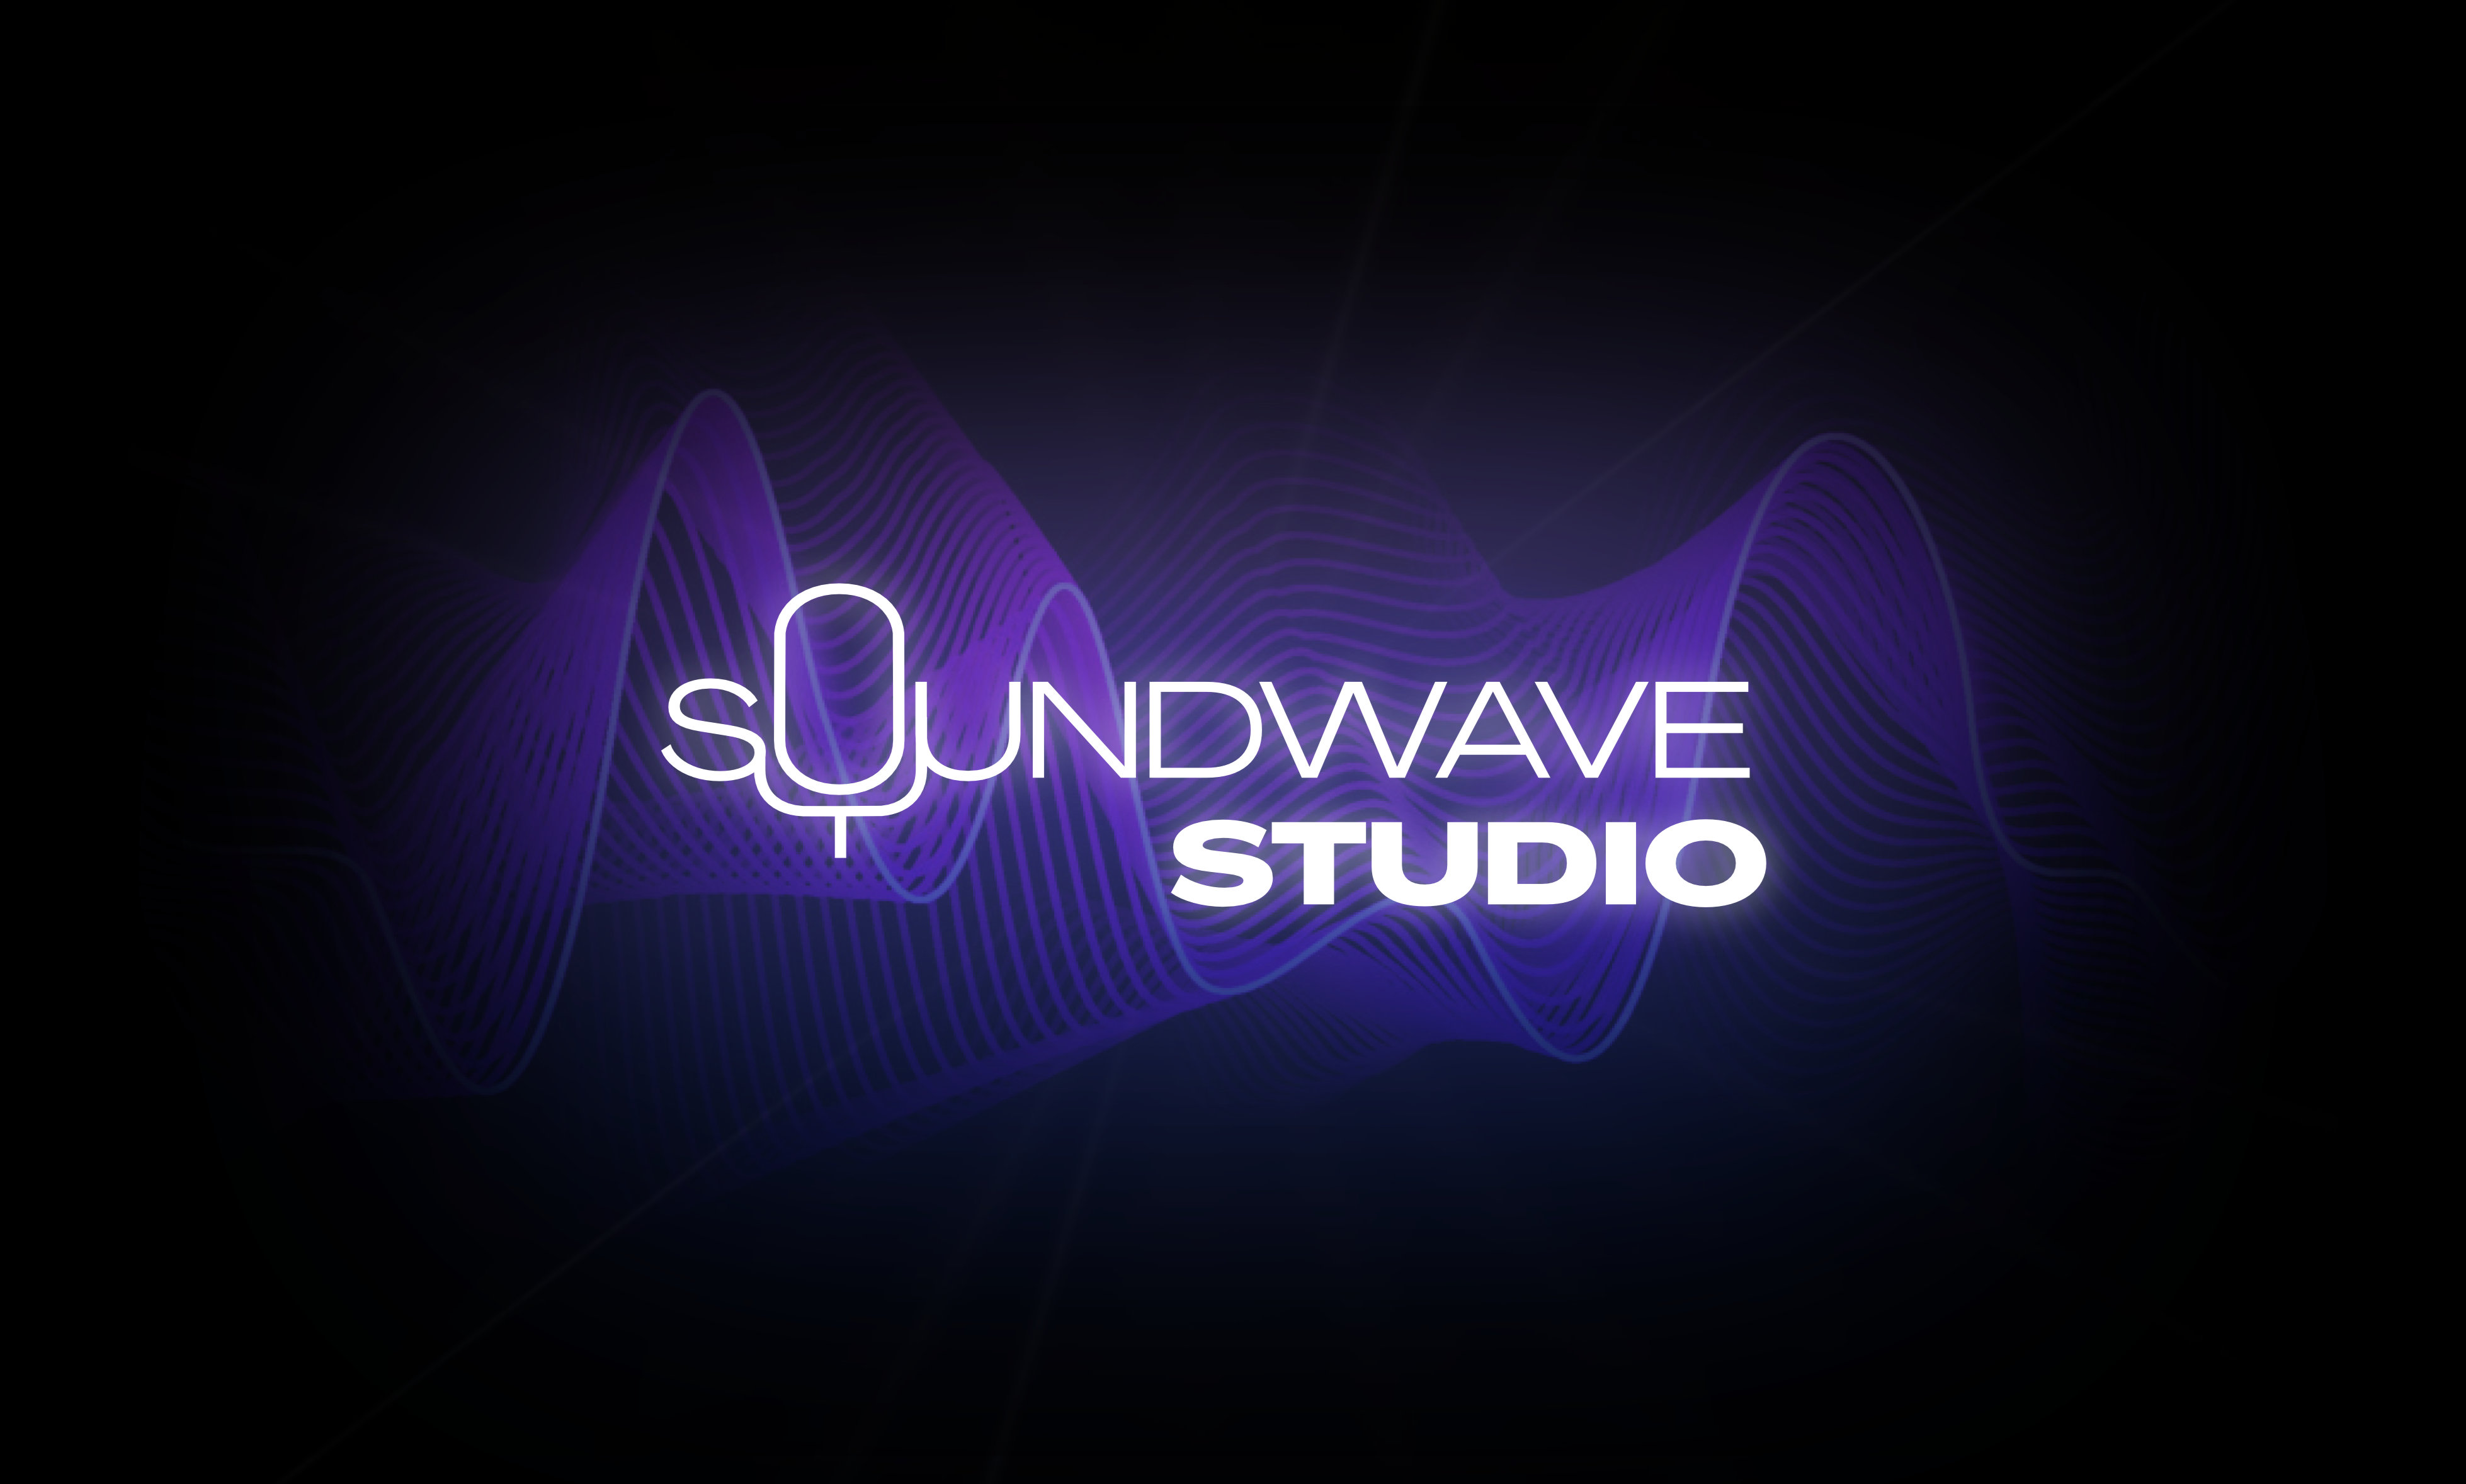 Soundwave Studio